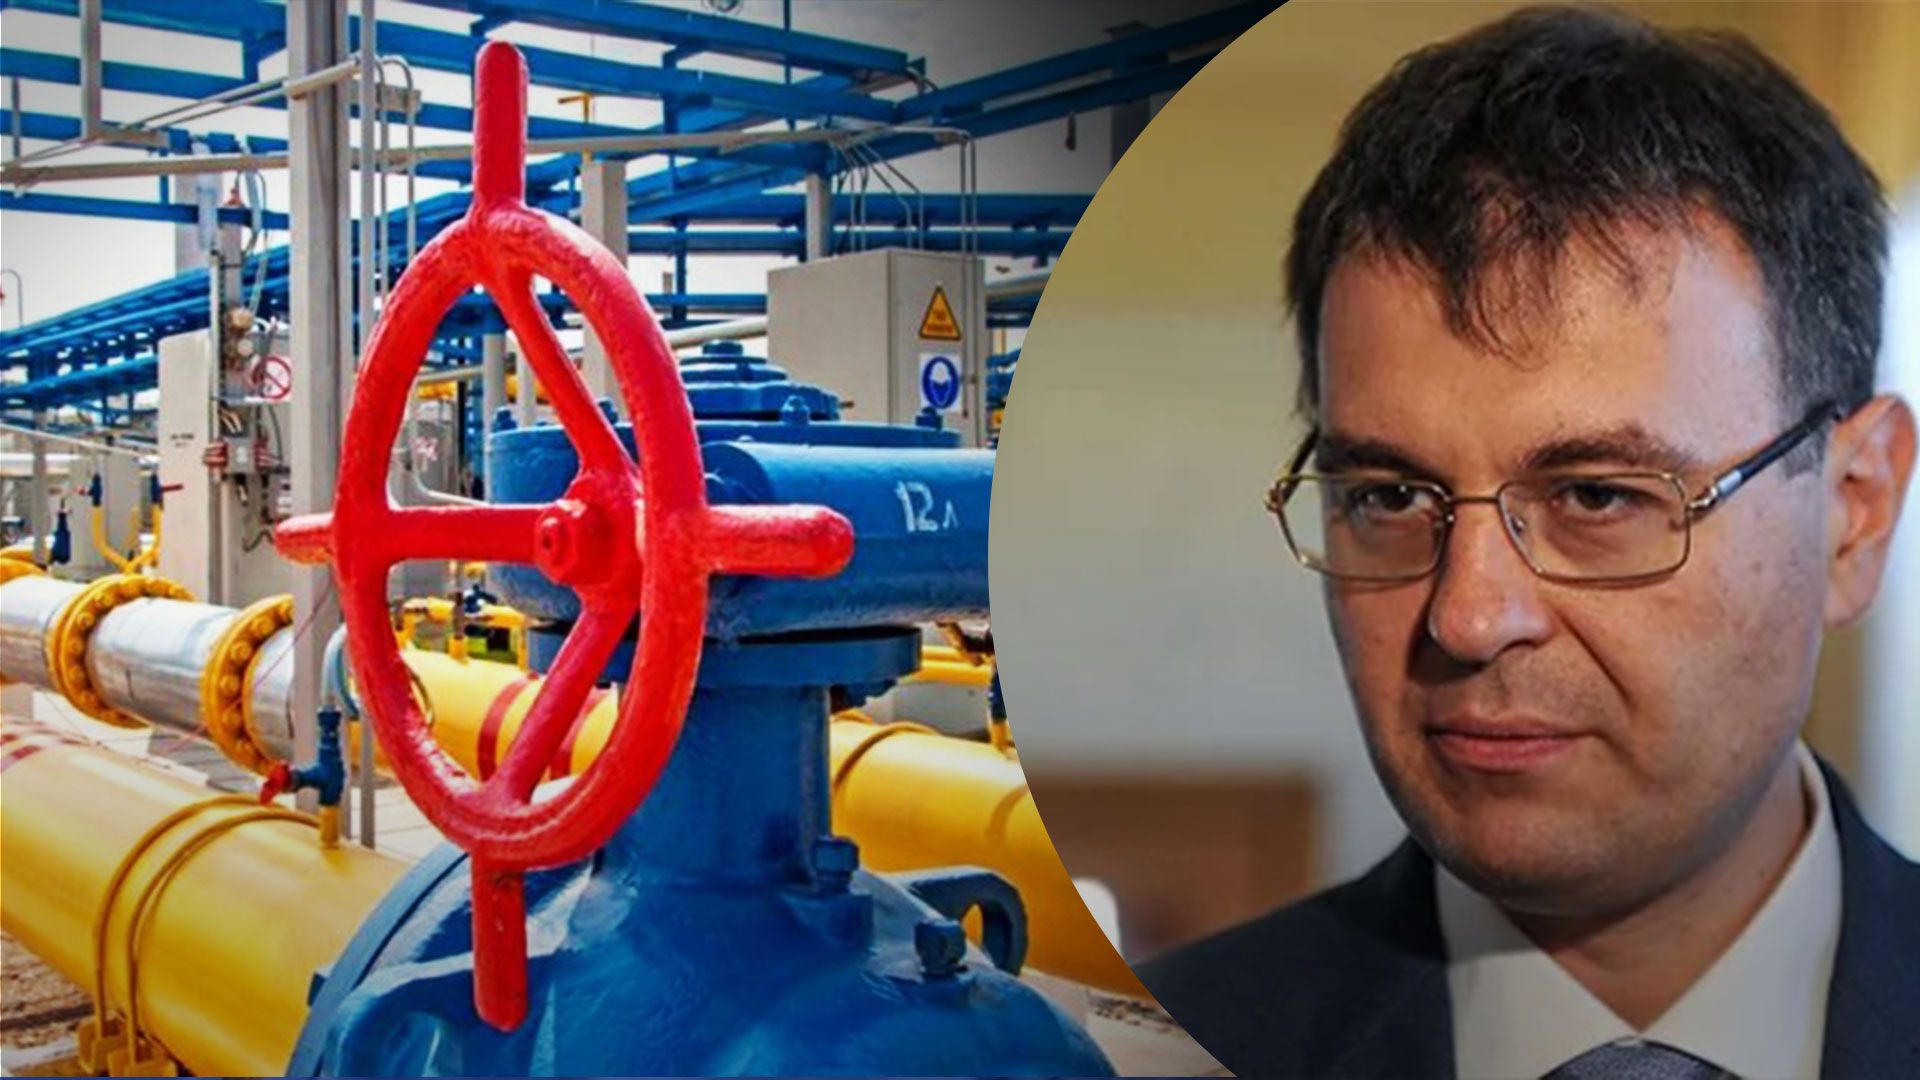 Украинская газотранспортная система ищет новые направления развития